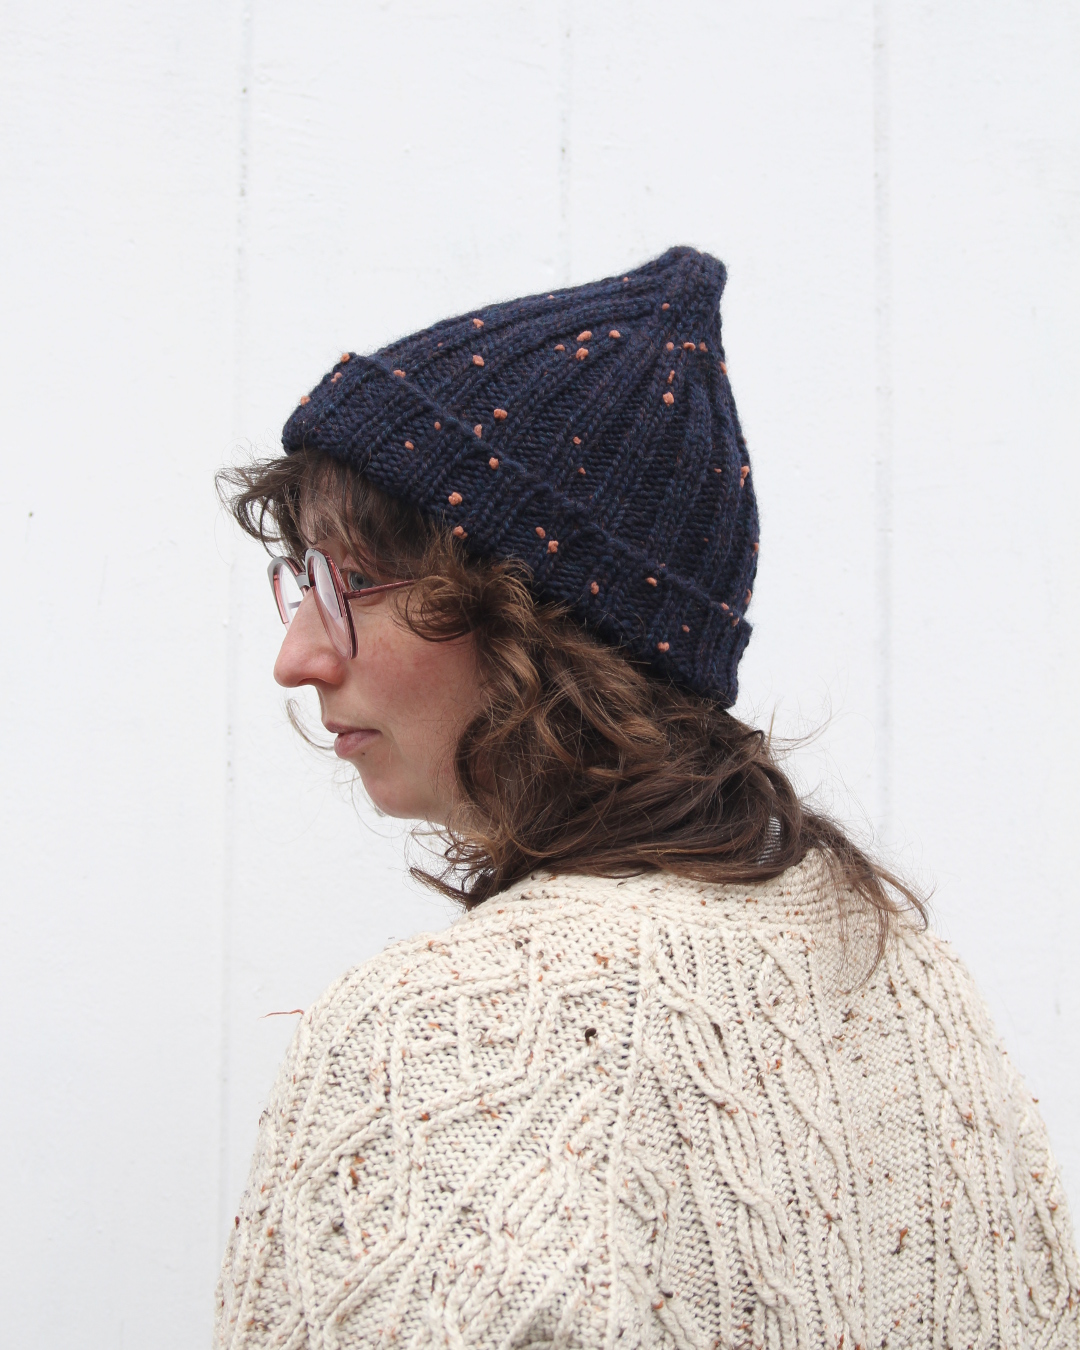 Yarn Review Update: Knitting With Daruma Pom Pom Wool - YAK